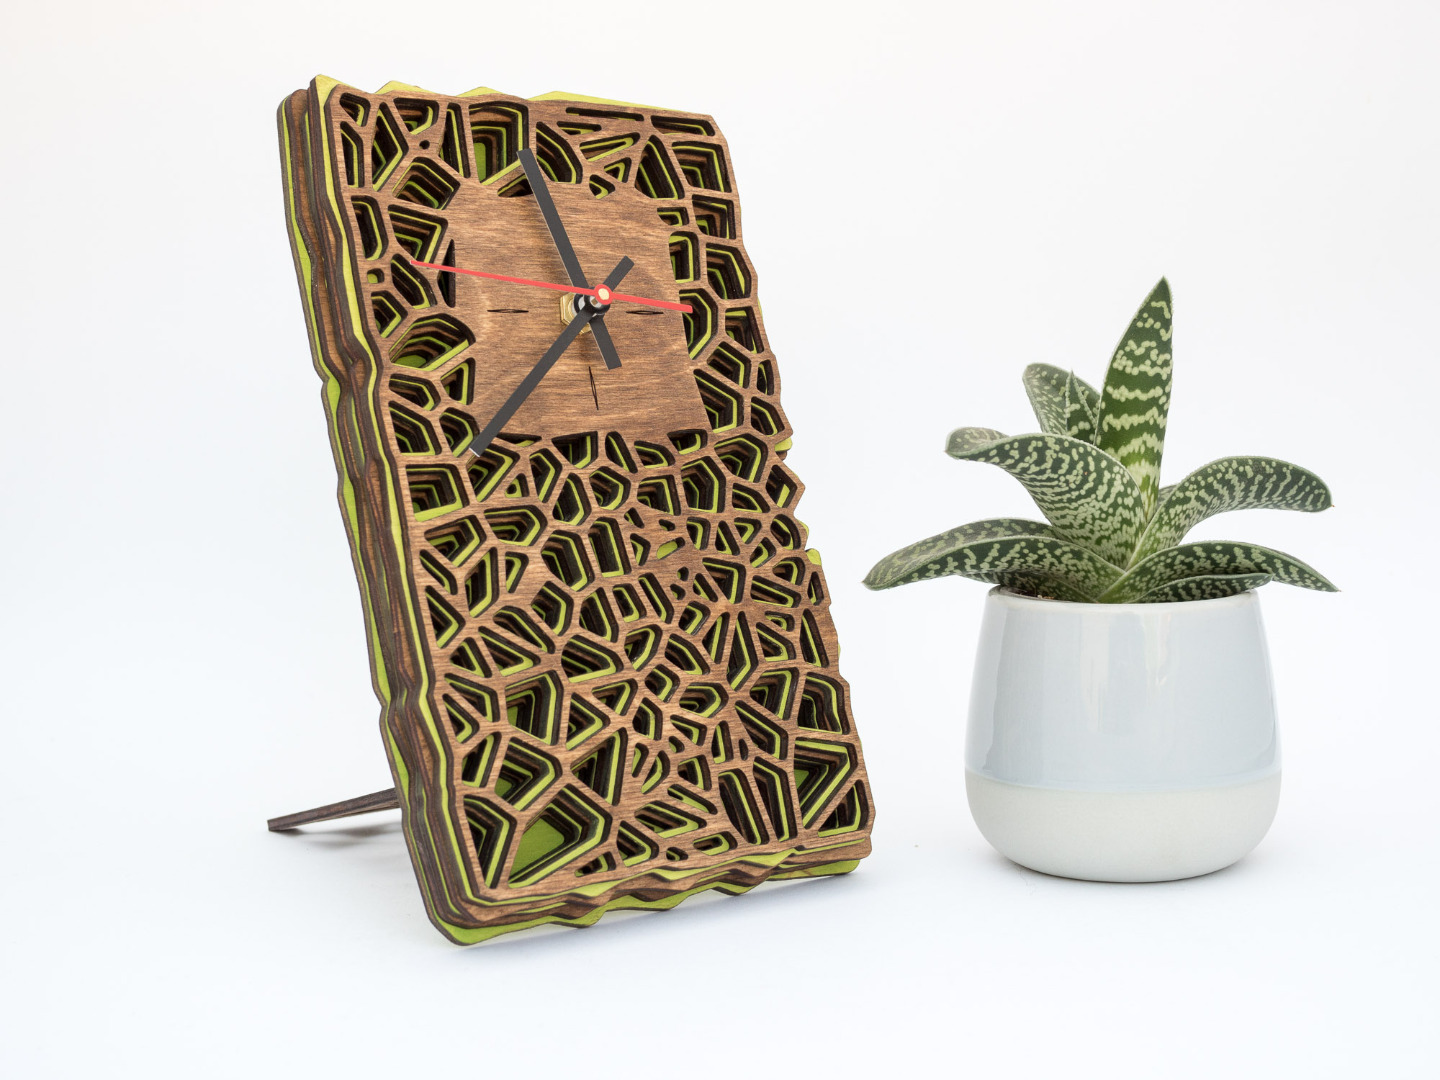 Uhr aus Holz für Schreibtisch oder Wand - Organisches Zweifarbiges Design in Walnuss und Maigrün 6